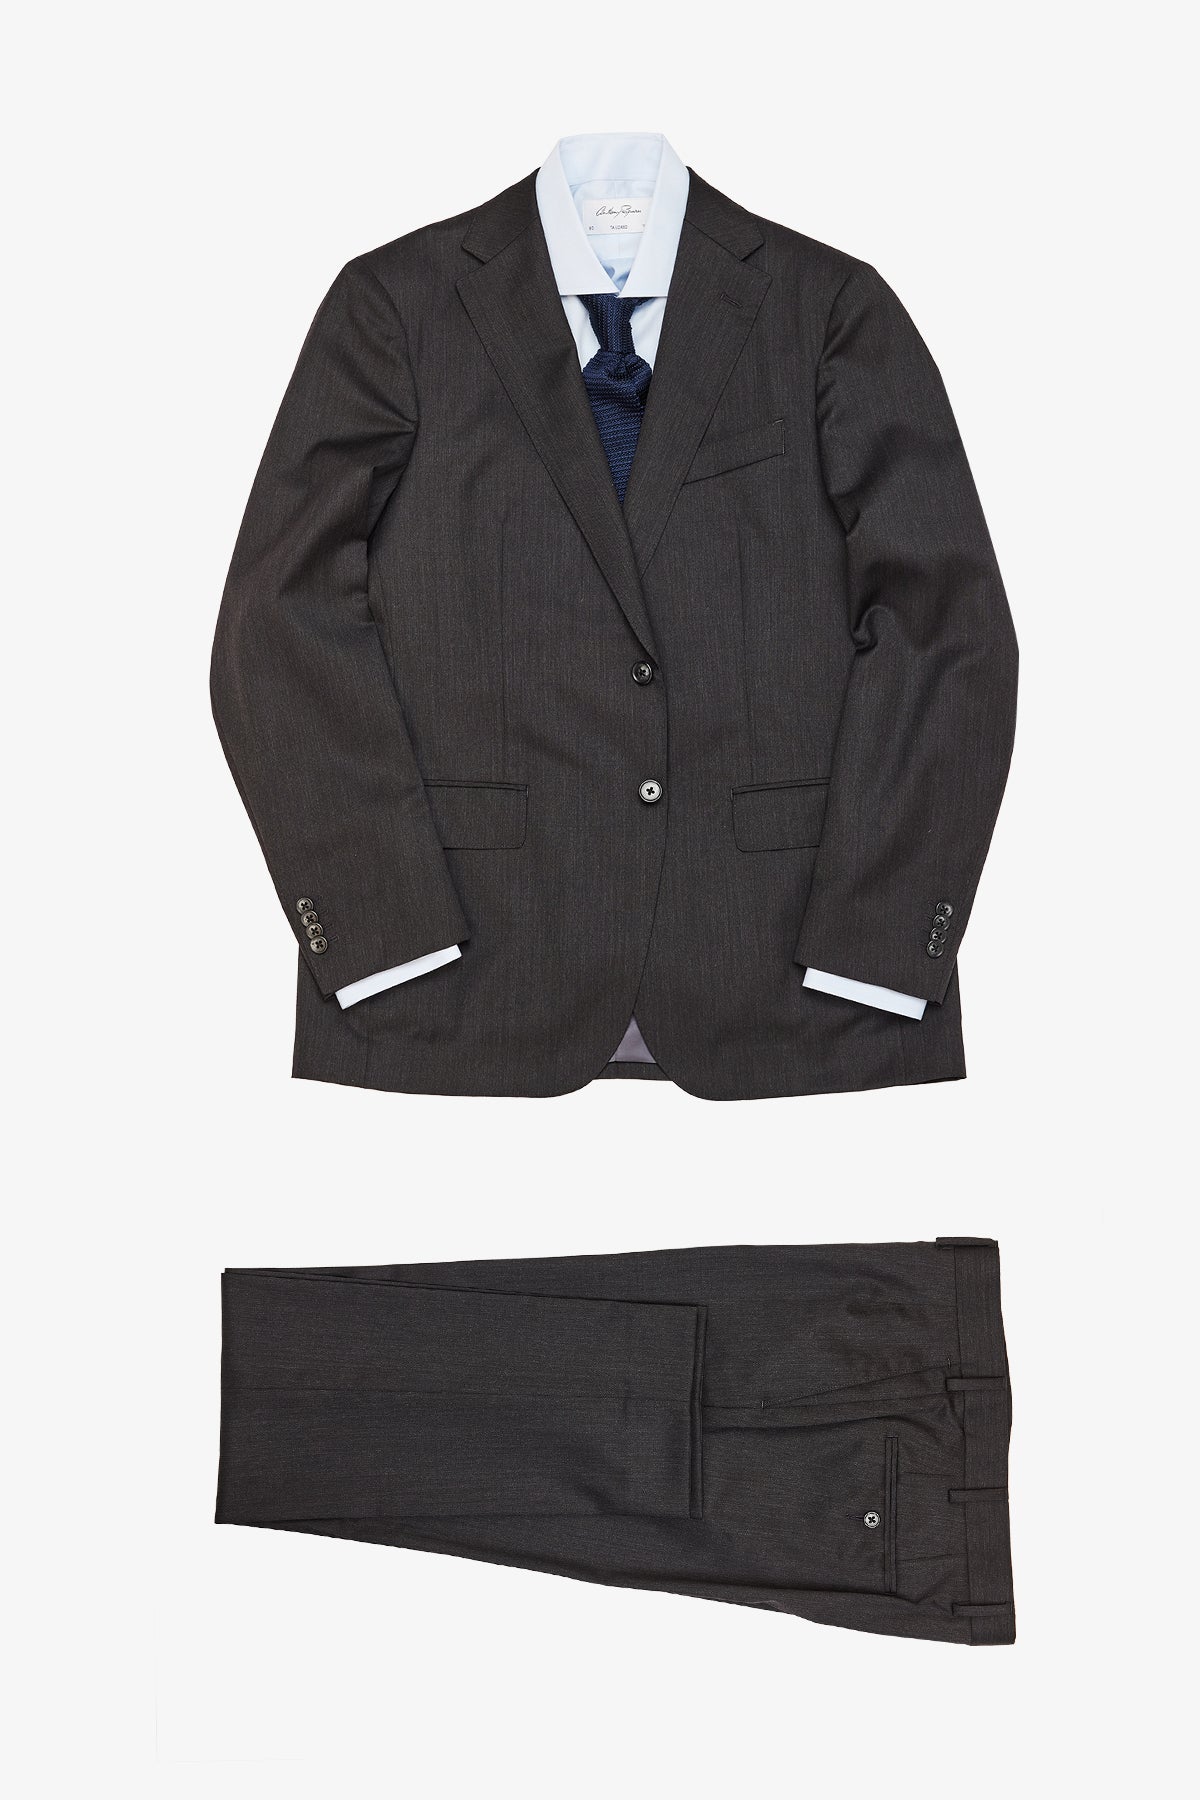 Sinclair - Charcoal Suit